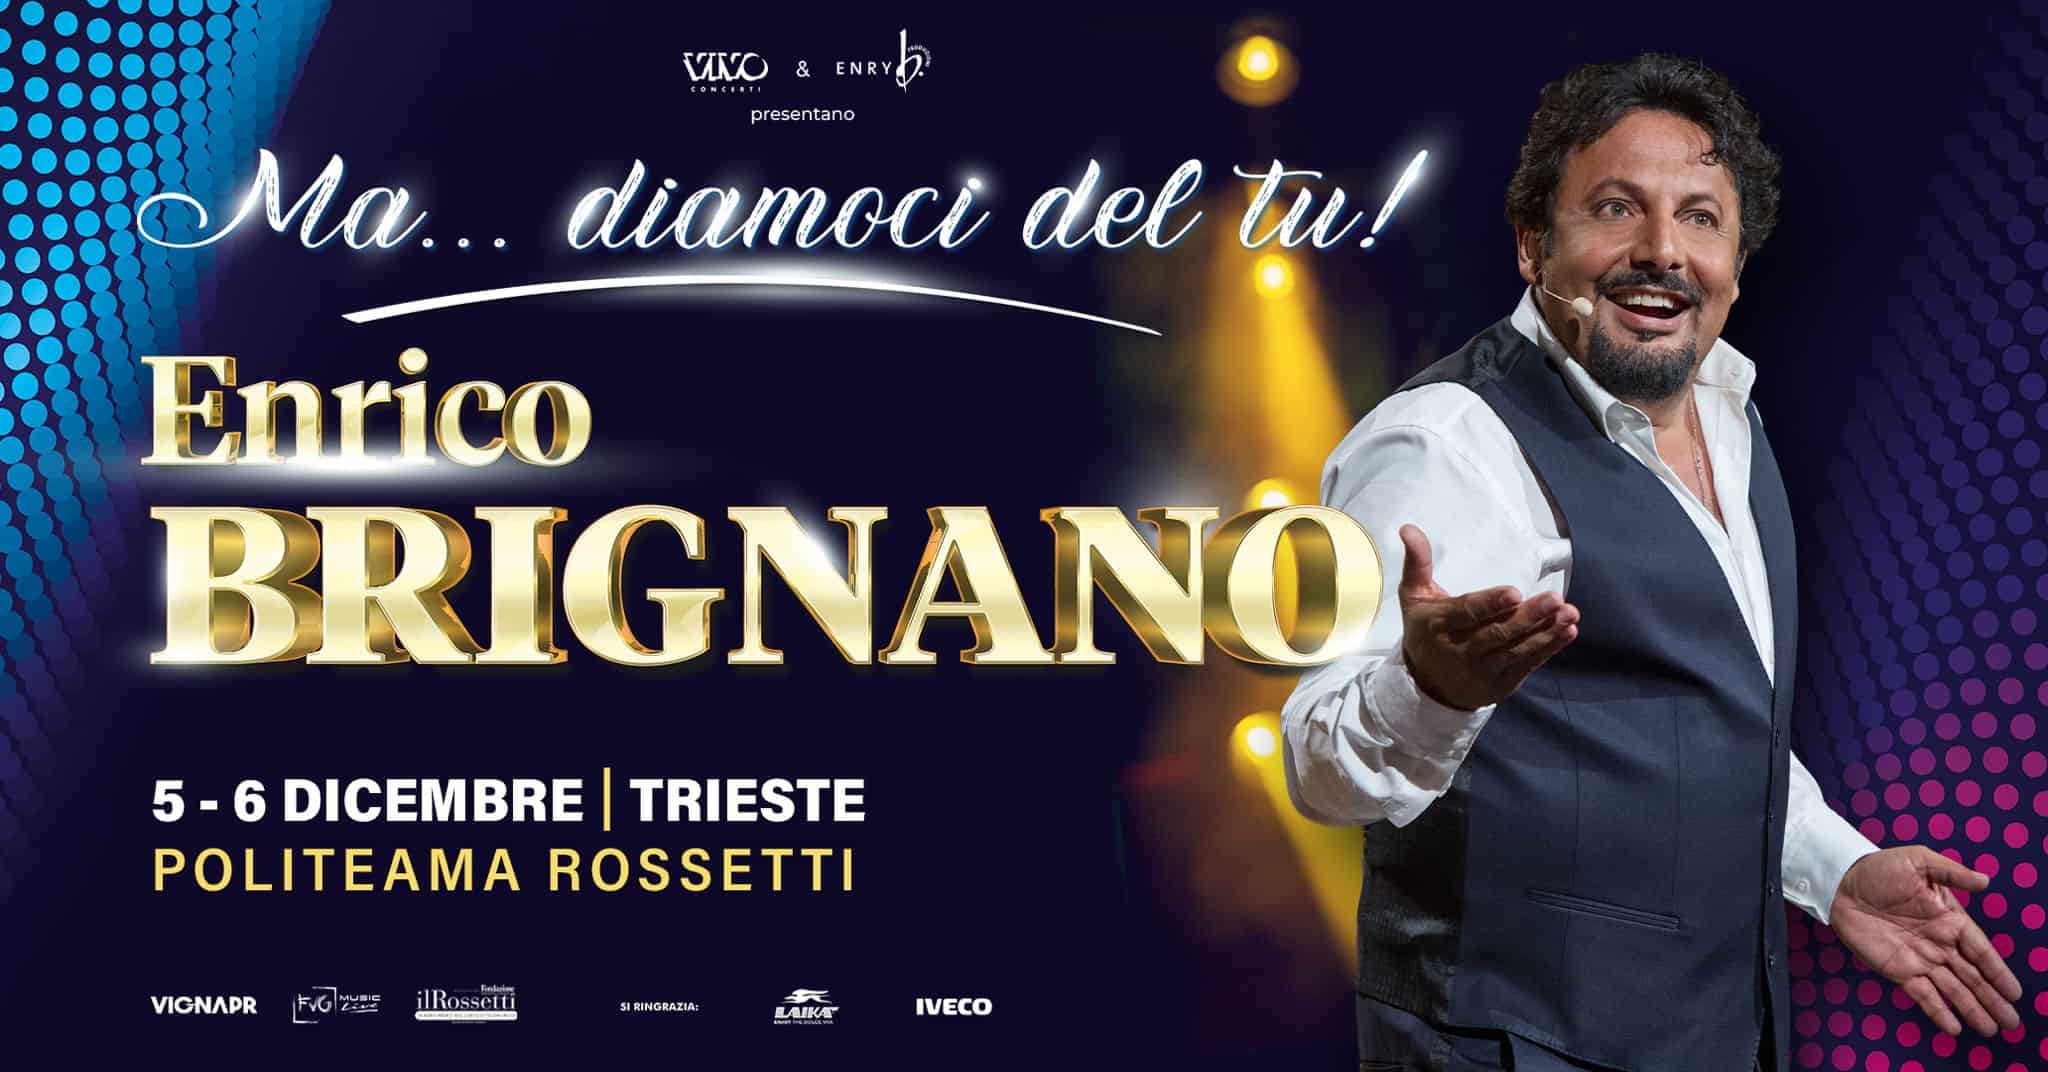 ENRICO BRIGNANO “MA… DIAMOCI DEL TU!” 5 e 6 dicembre teatro ROSSETTI Trieste